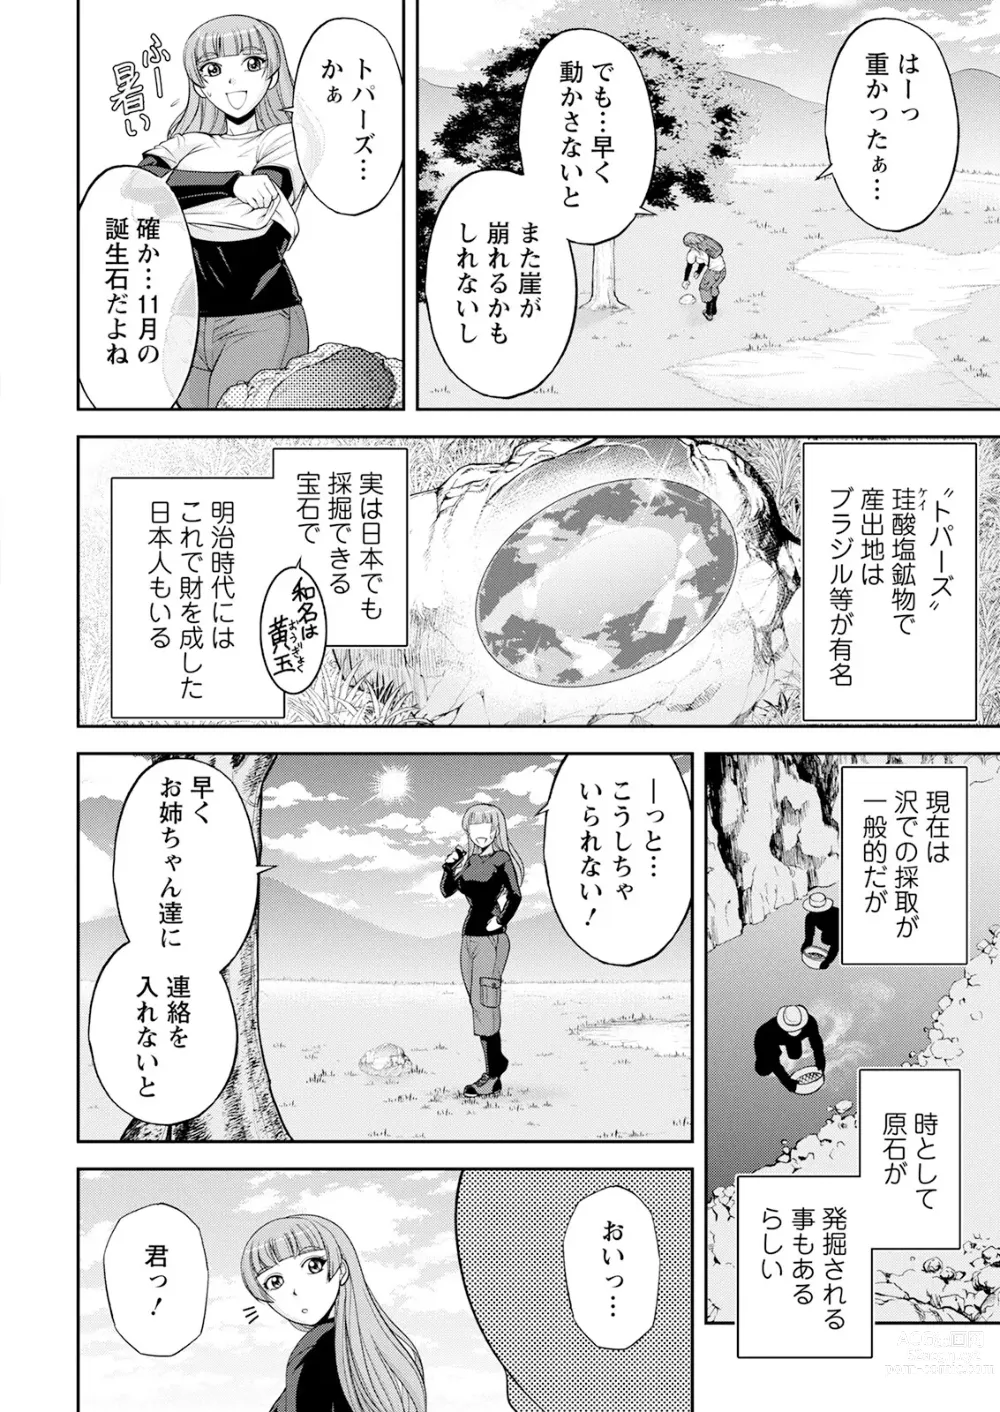 Page 14 of manga Action Pizazz 2023-08